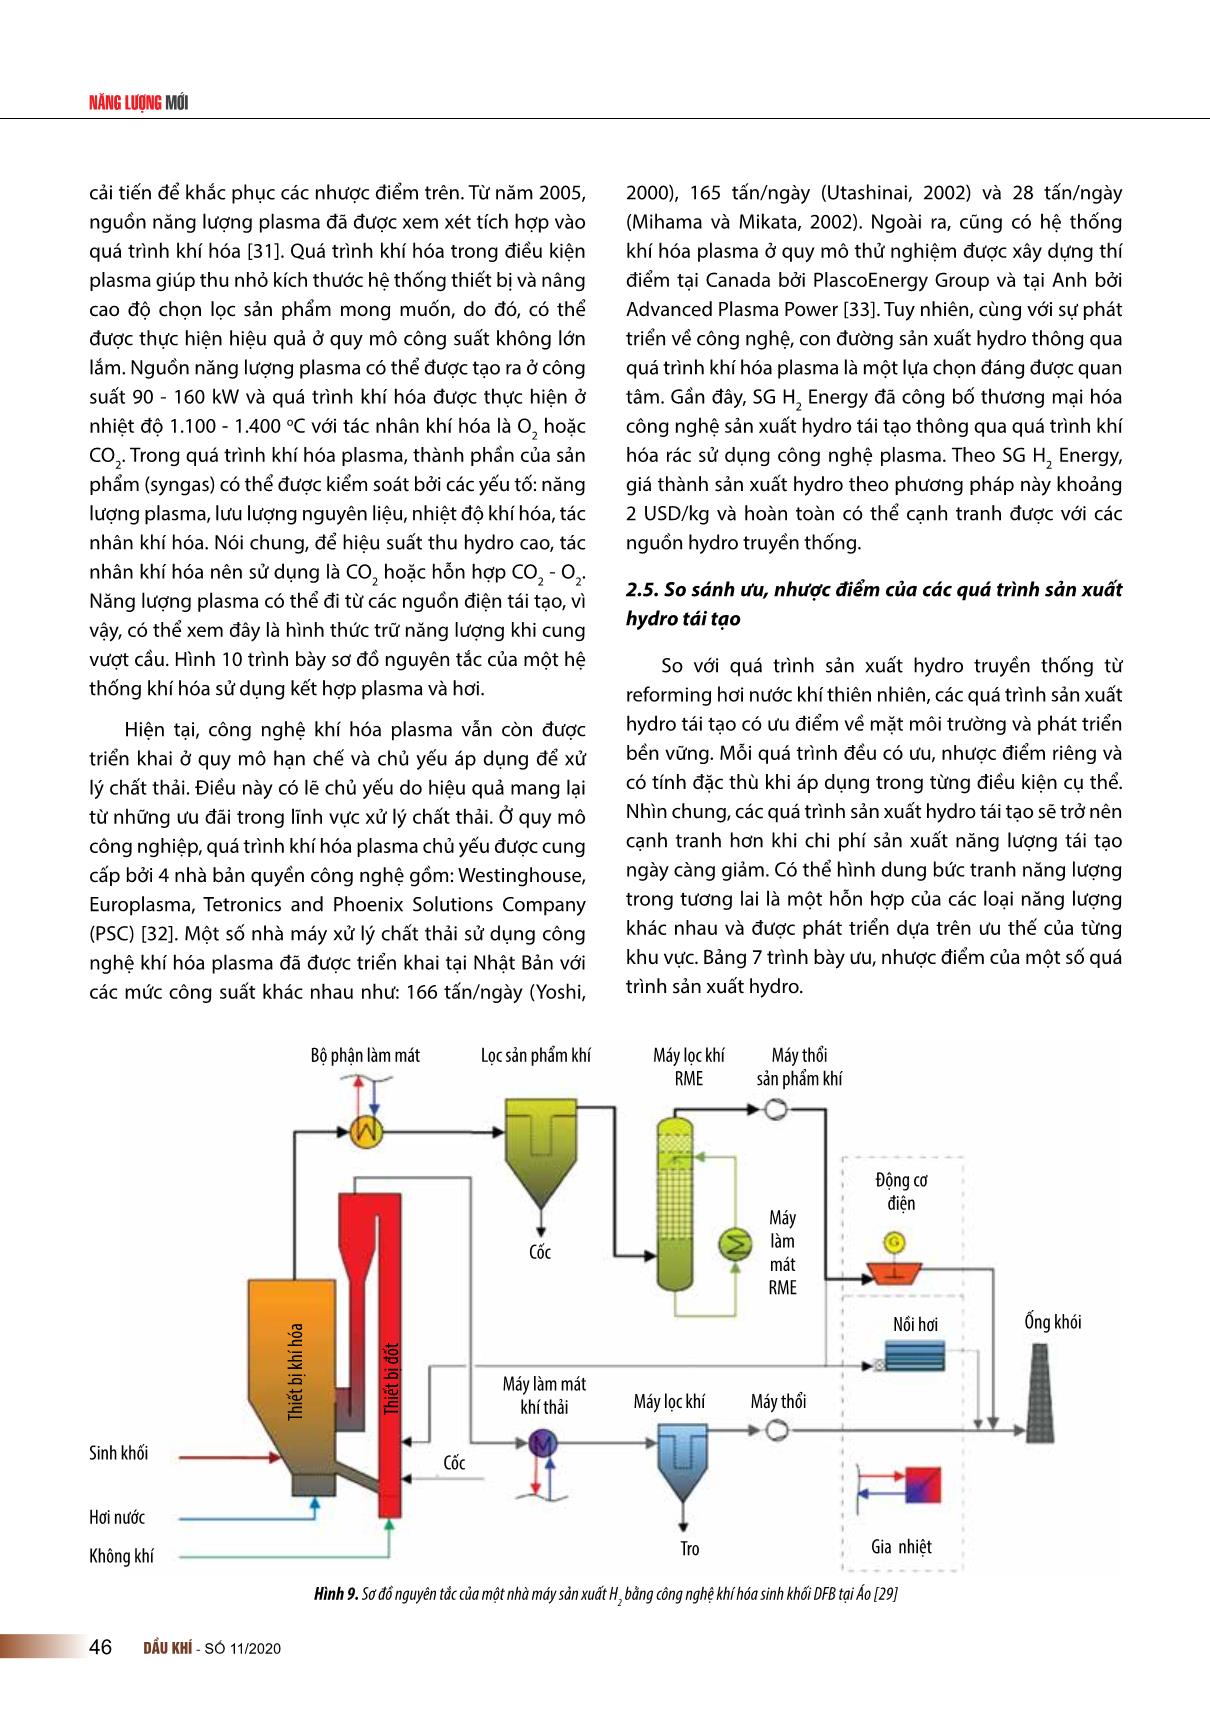 Sản xuất Hydro từ các nguồn tái tạo và sử dụng trong các nhà máy chế biến dầu khí tại Việt Nam trang 10